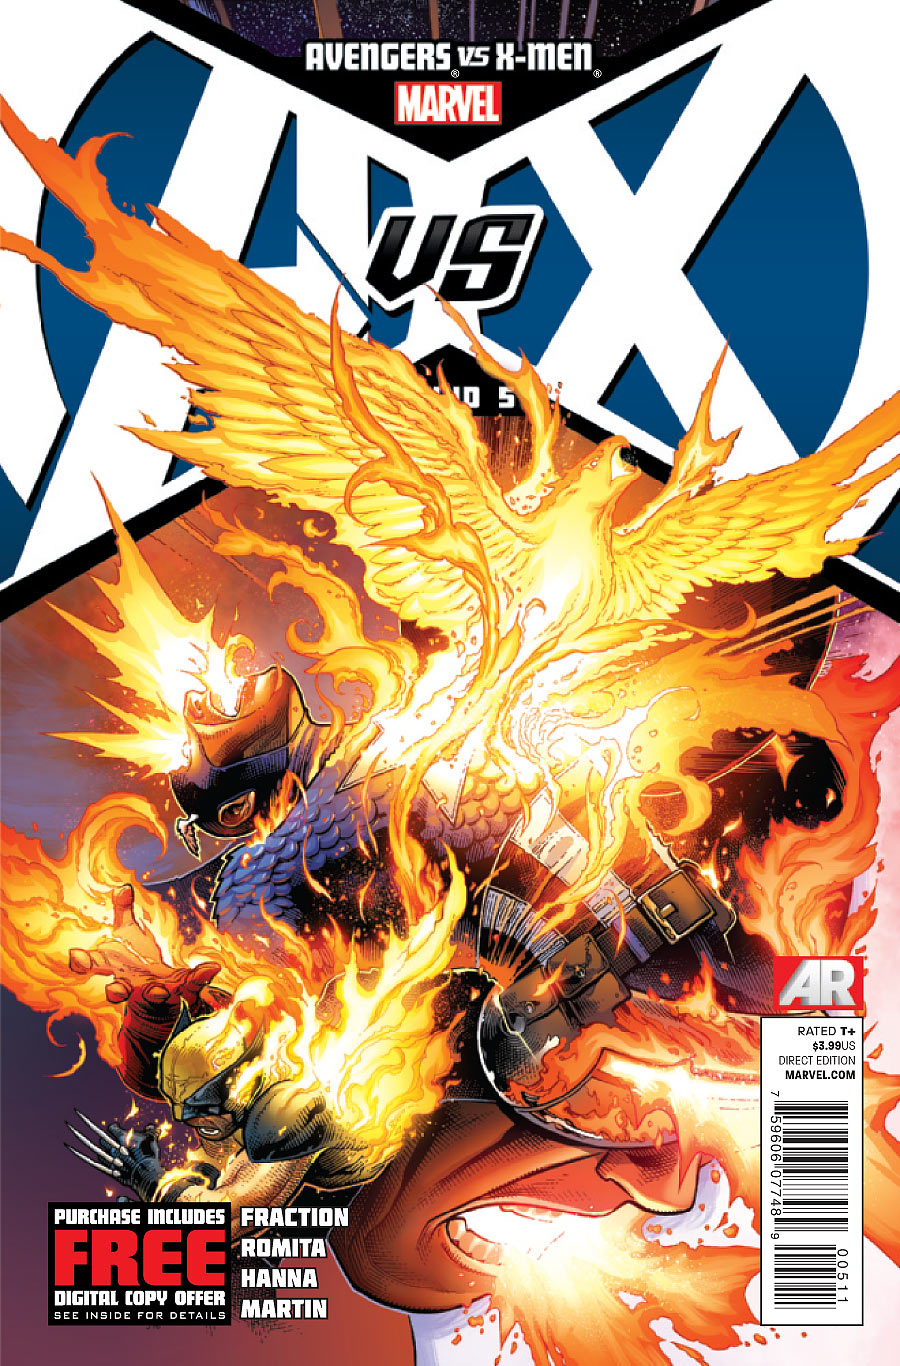 Avengers vs. X-Men Vol 1 5 | Marvel Database | FANDOM ...